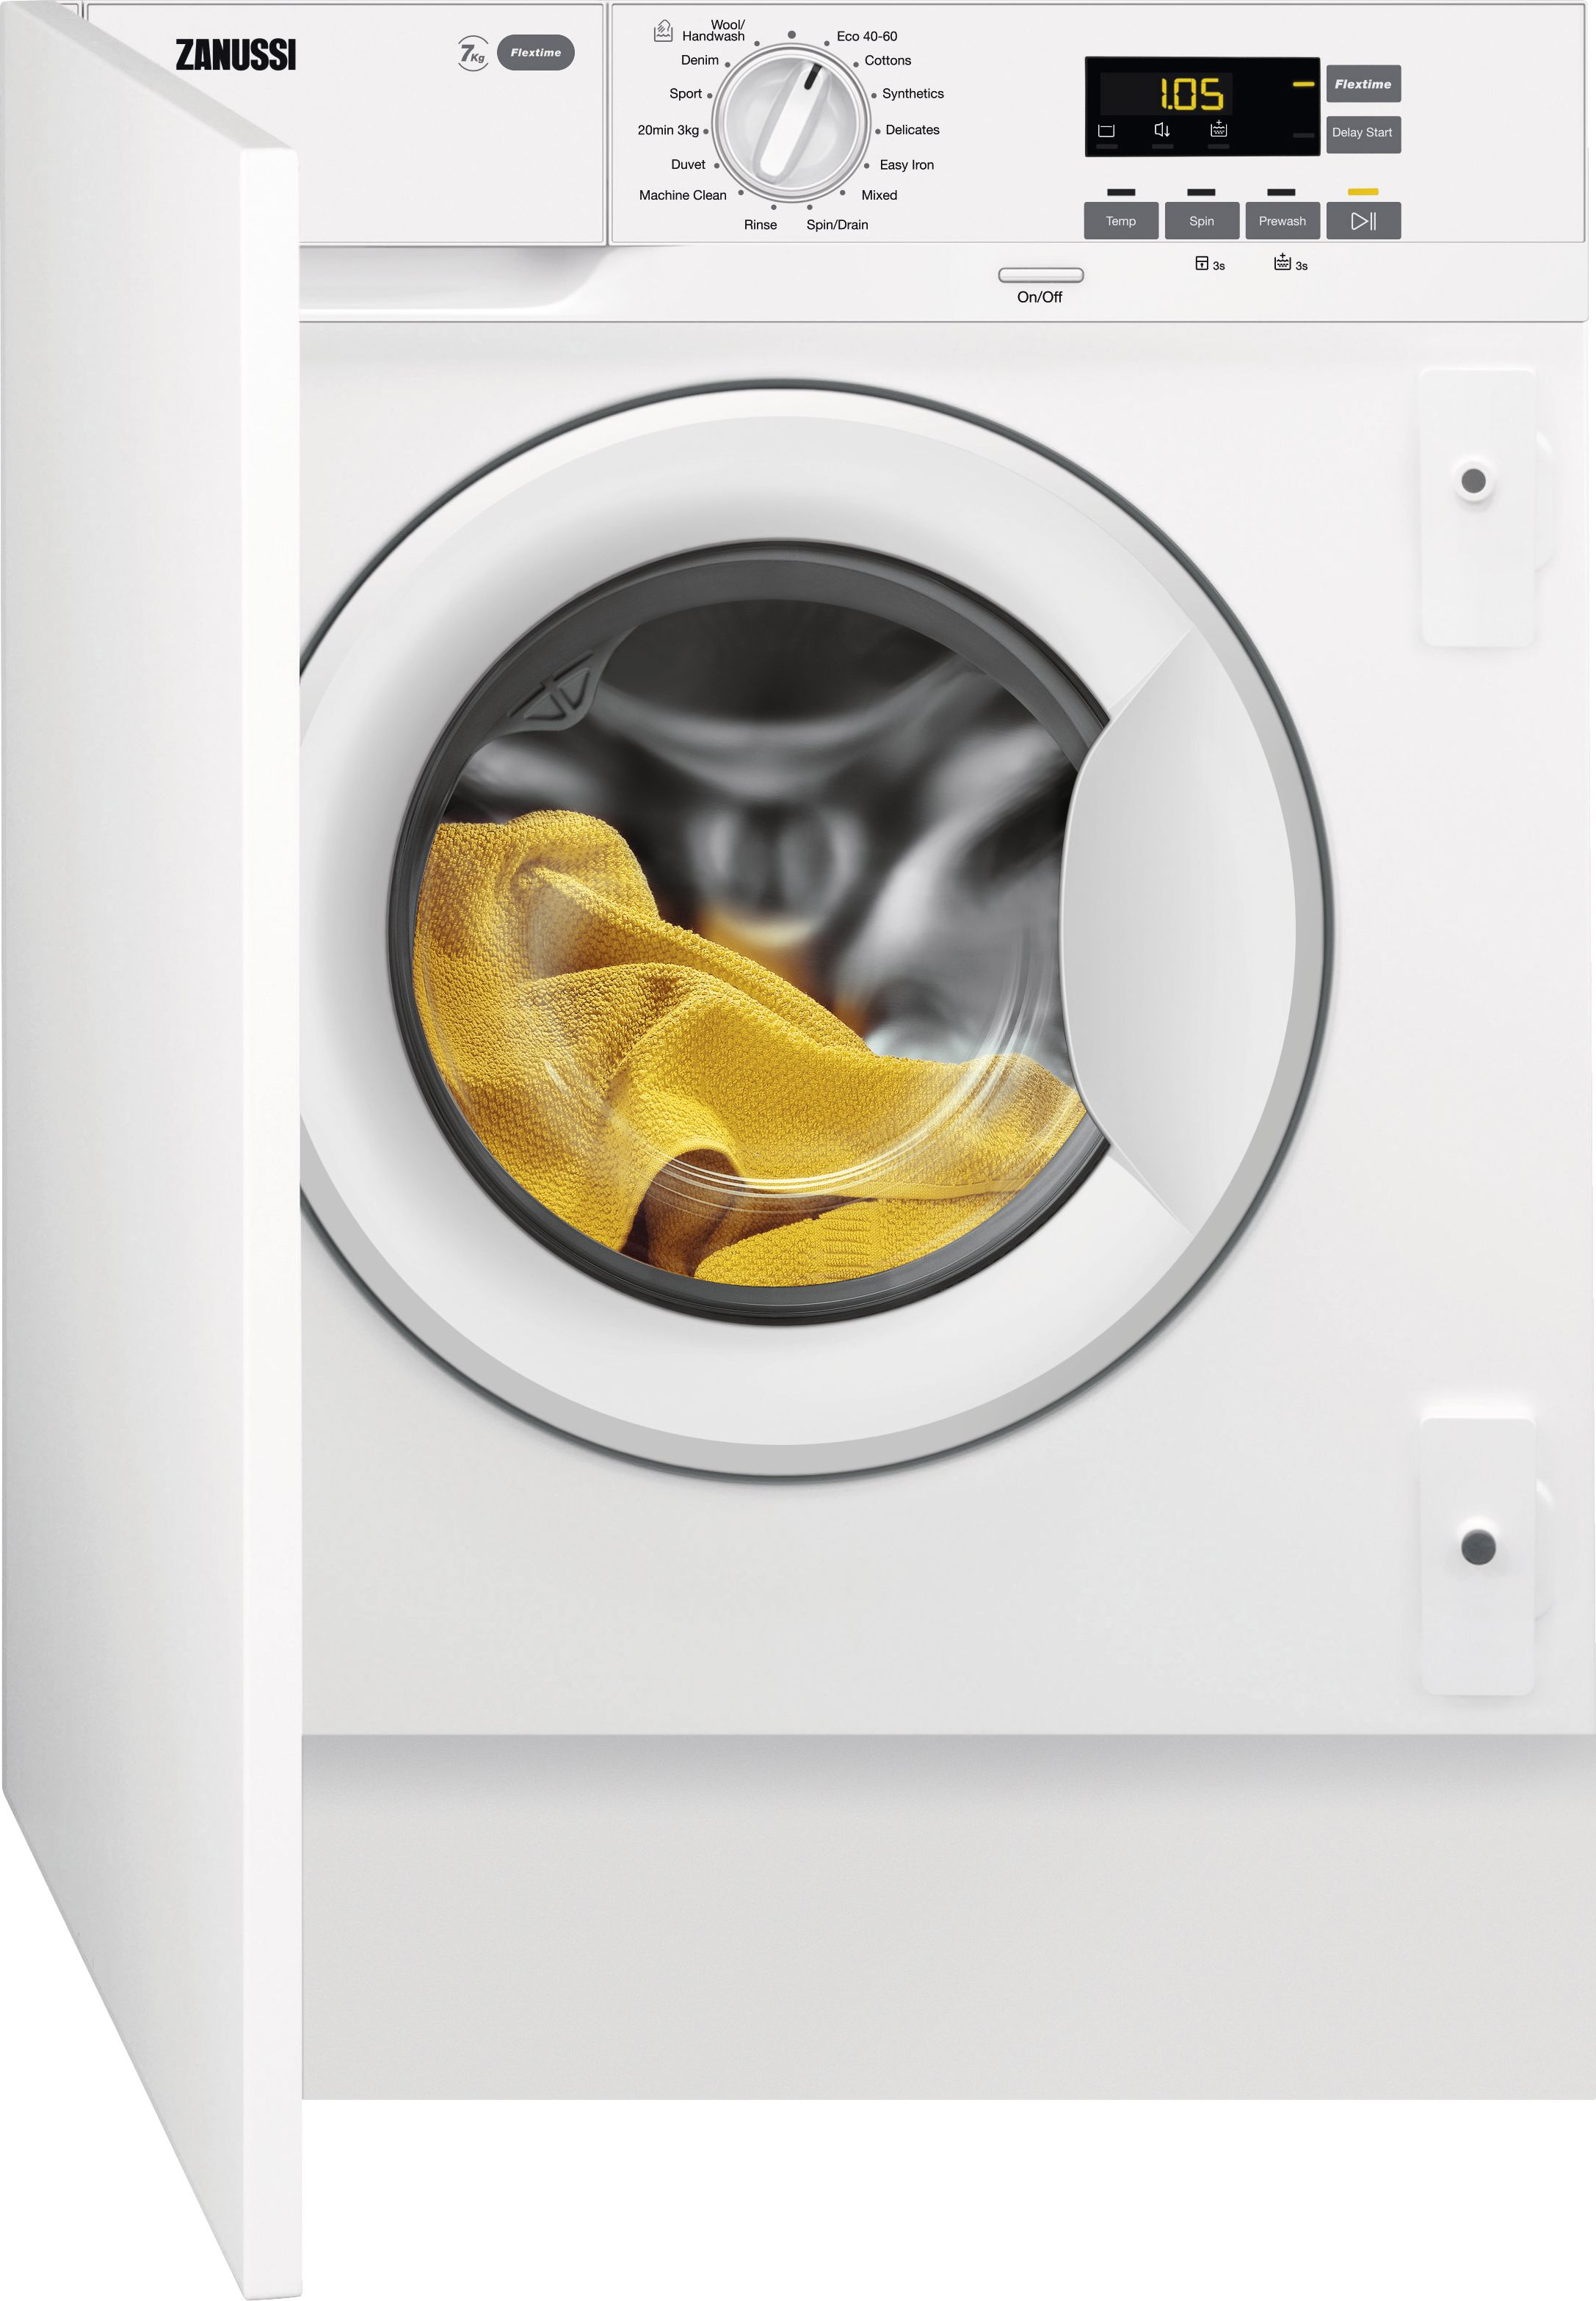 Zanussi ZW74PDBI Integrated 7kg Washing Machine with 1400 rpm - White - B Rated, White